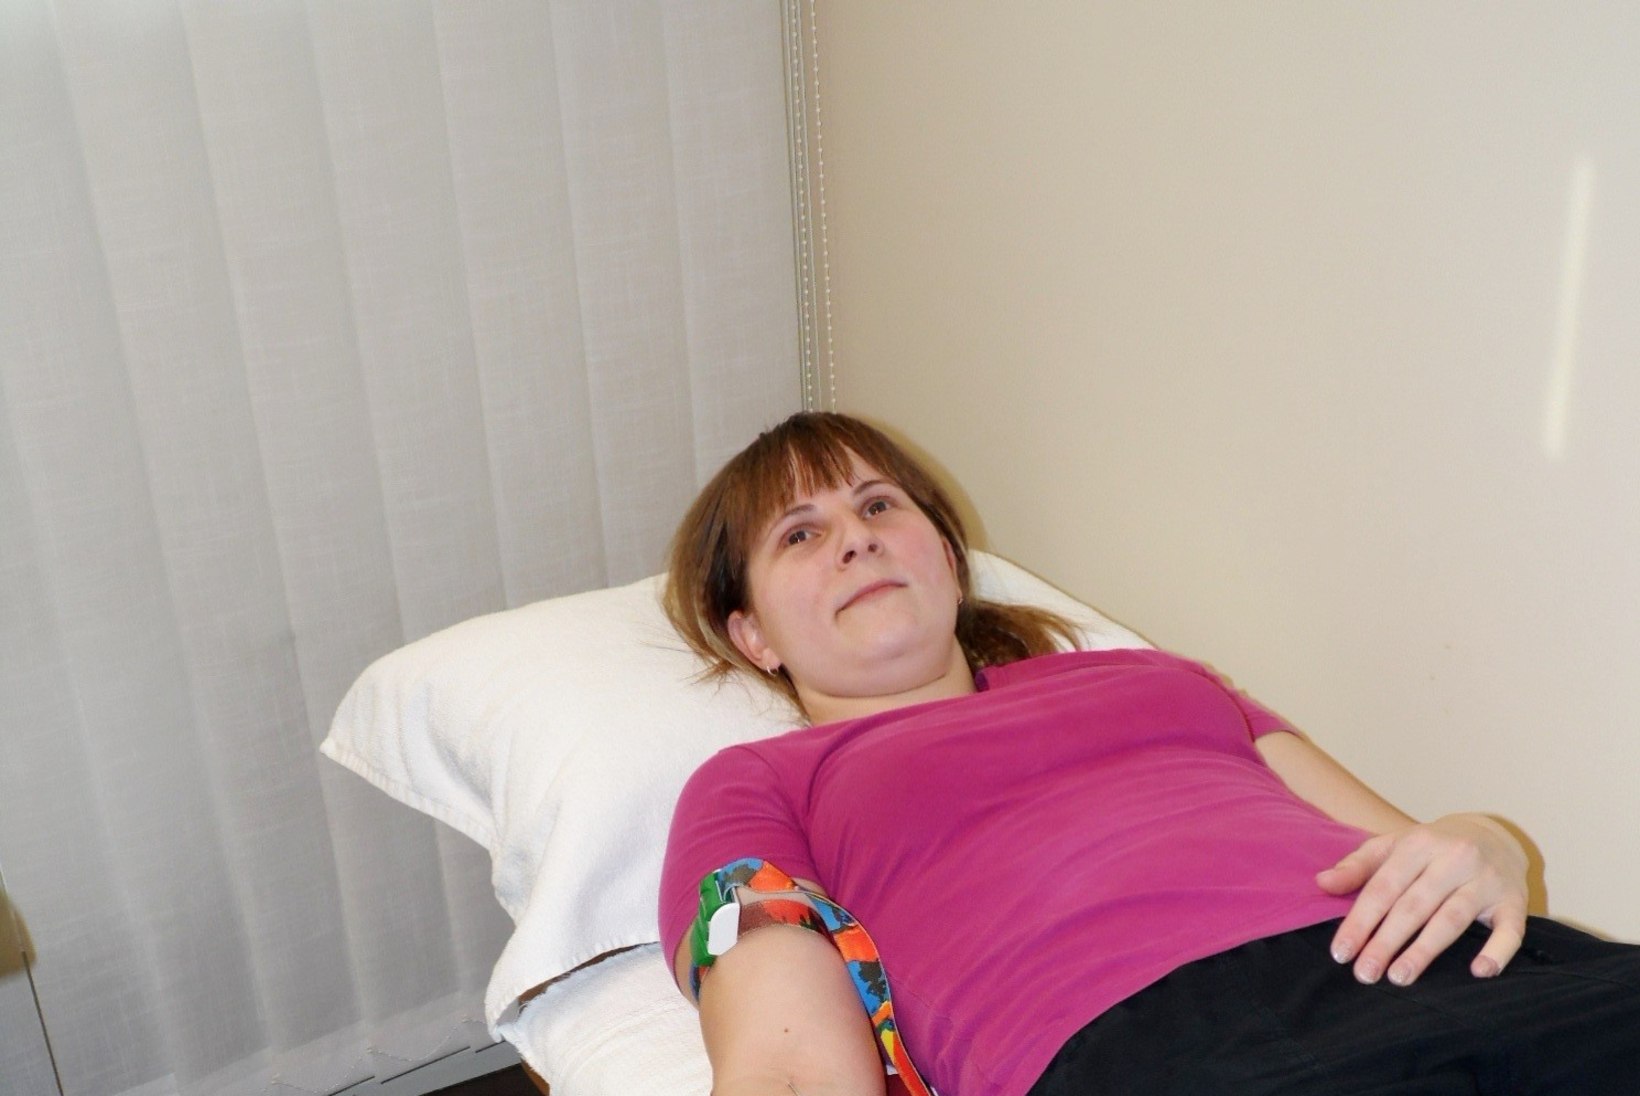 Doonor verekeskuse väljasõidul: "Nii on väga mugav head teha!"